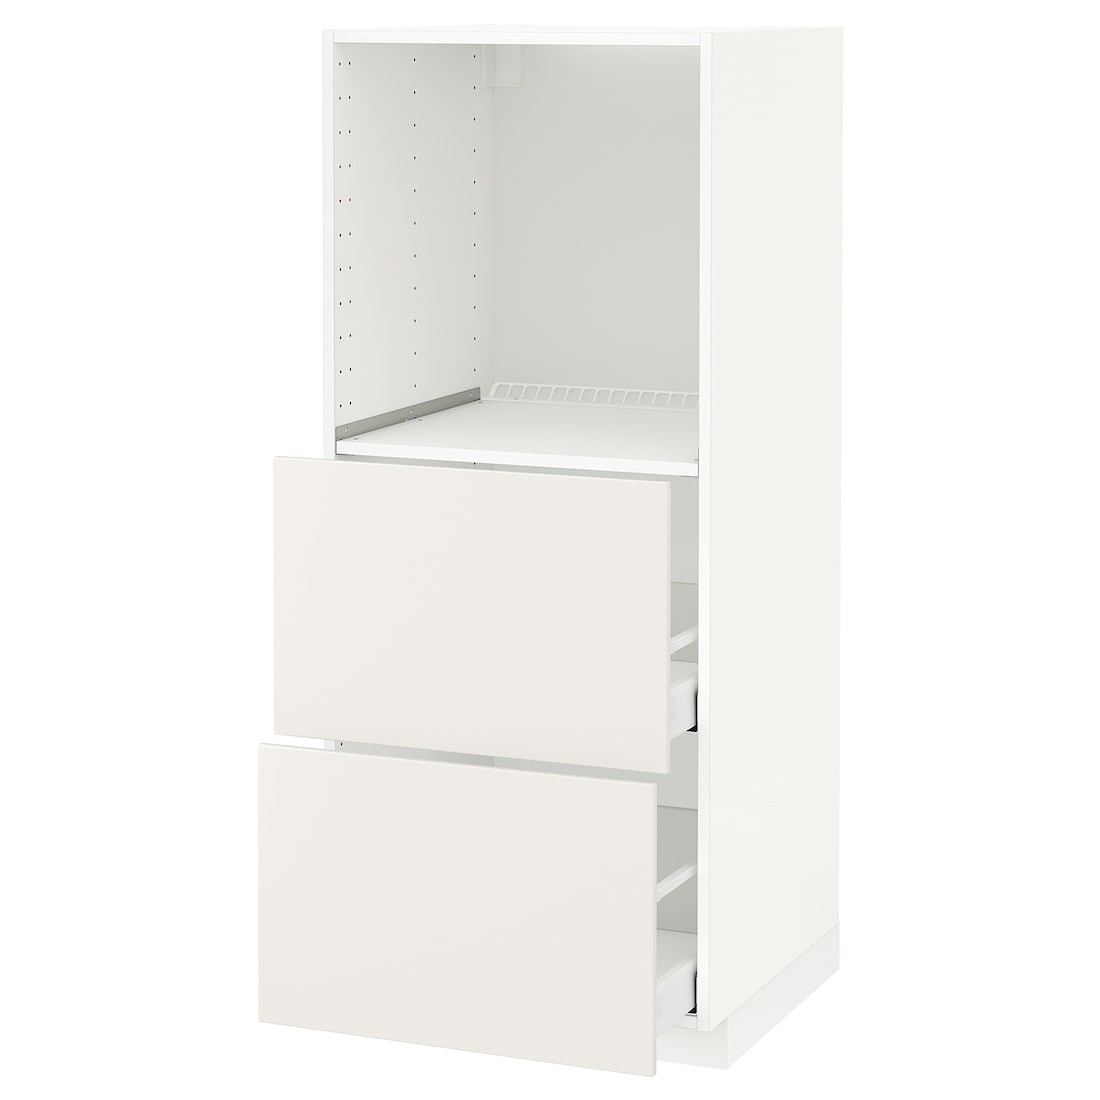 IKEA METOD МЕТОД / MAXIMERA МАКСИМЕРА Высокий шкаф с 2 ящиками для духовки, белый / Veddinge белый, 60x60x140 см 39020238 390.202.38